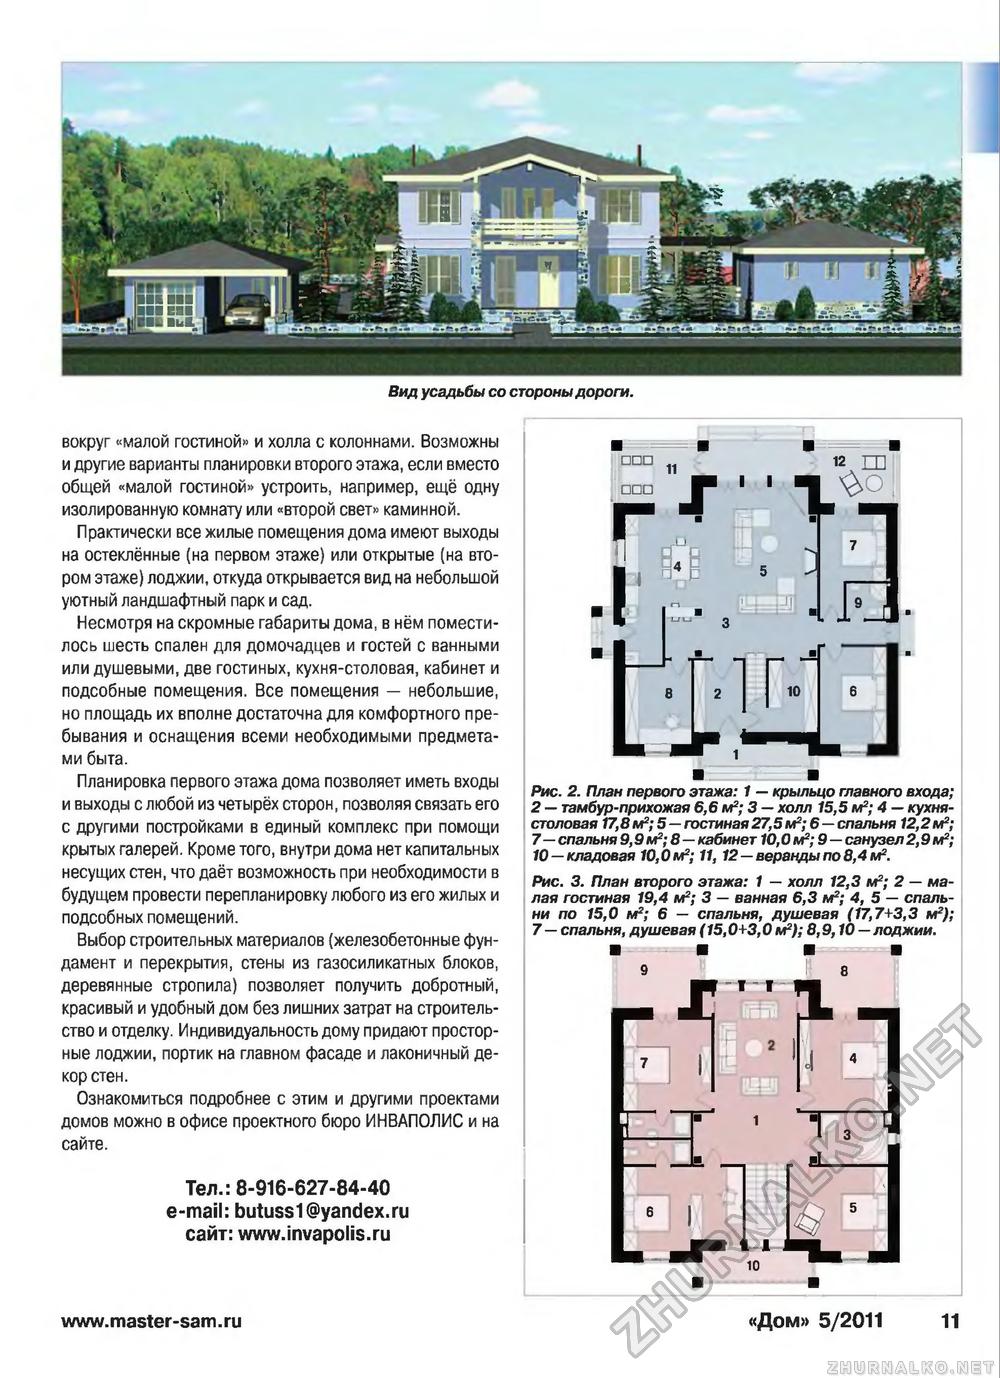 Дом 2011-05, страница 11